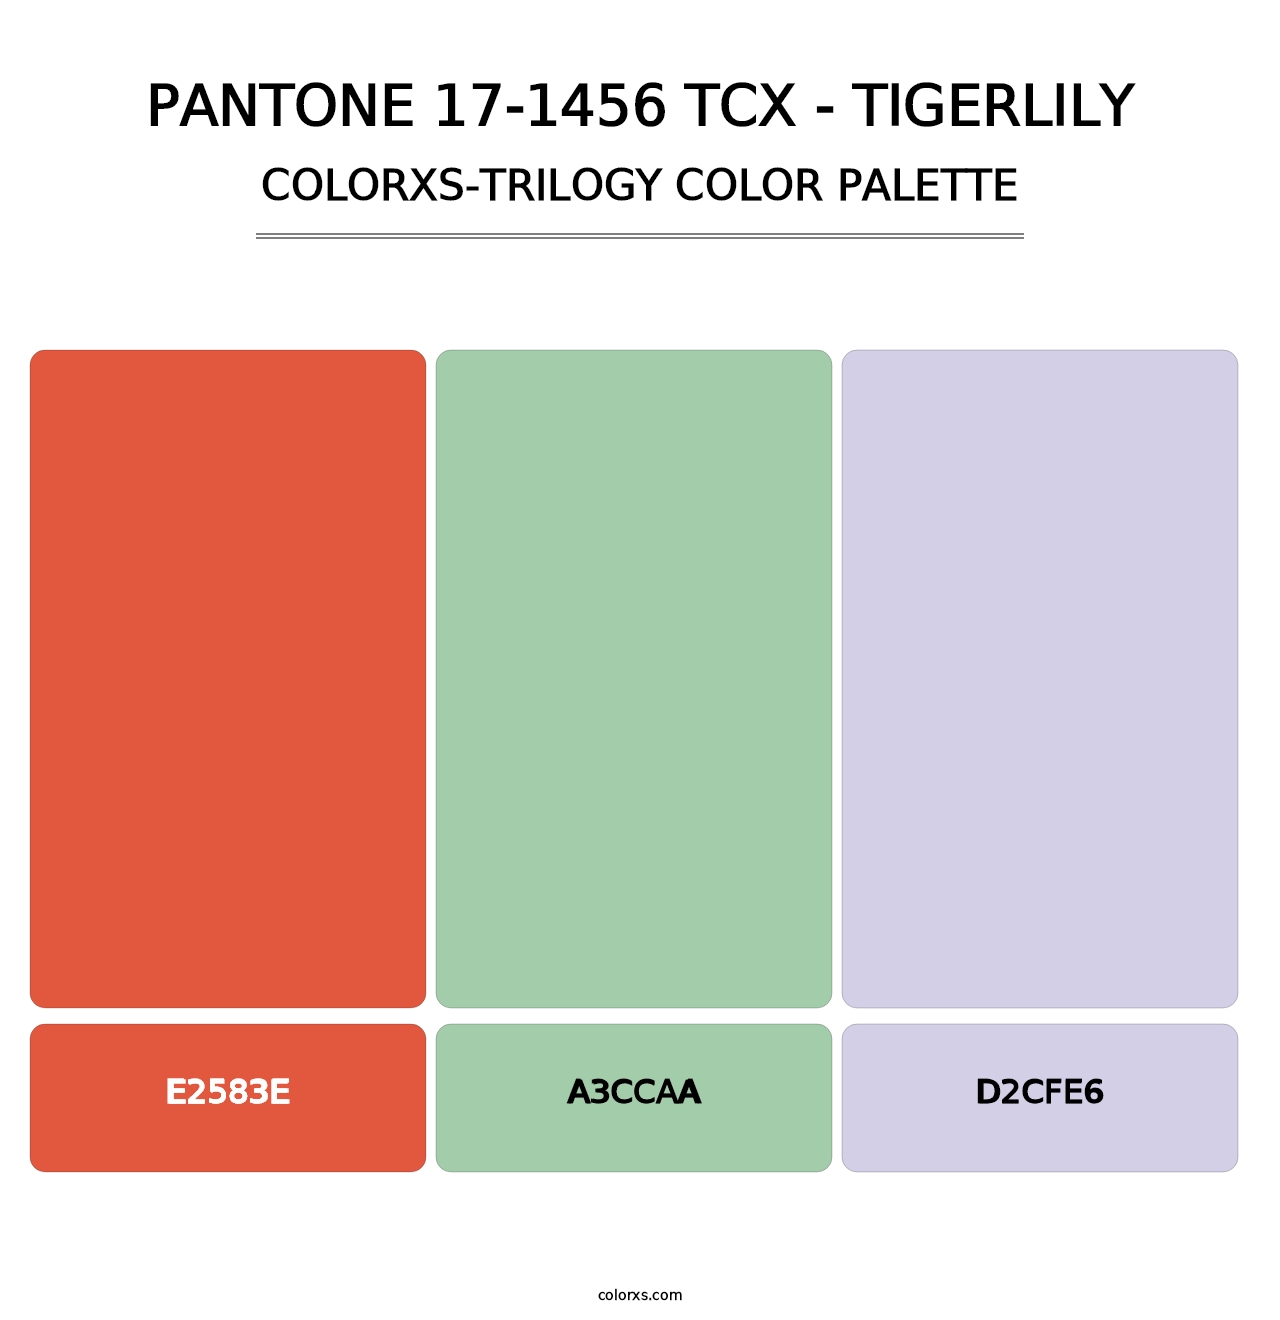 PANTONE 17-1456 TCX - Tigerlily - Colorxs Trilogy Palette